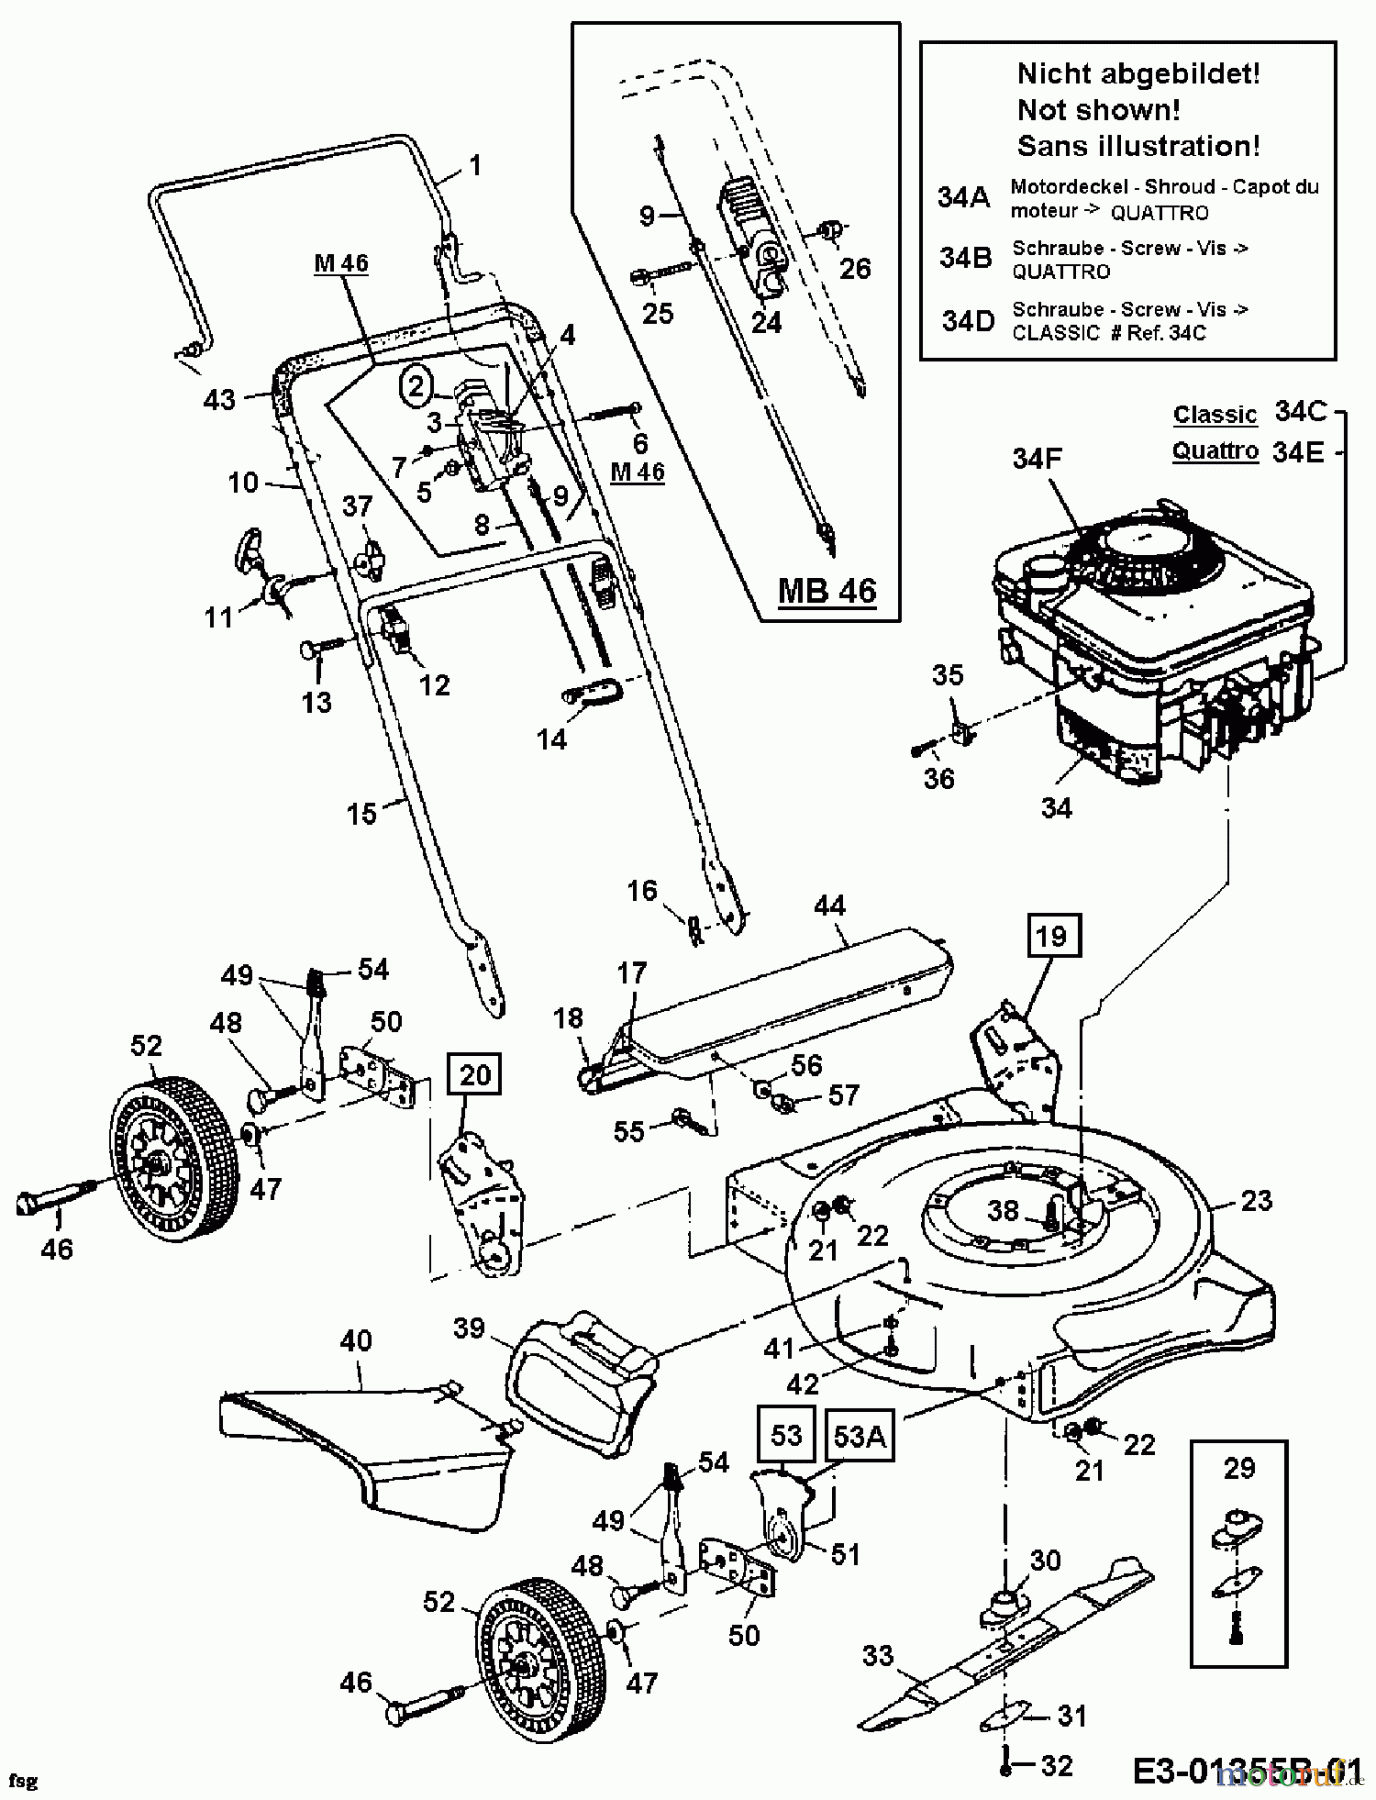  Mastercut Motormäher MB 46 11A-704A659  (2000) Grundgerät